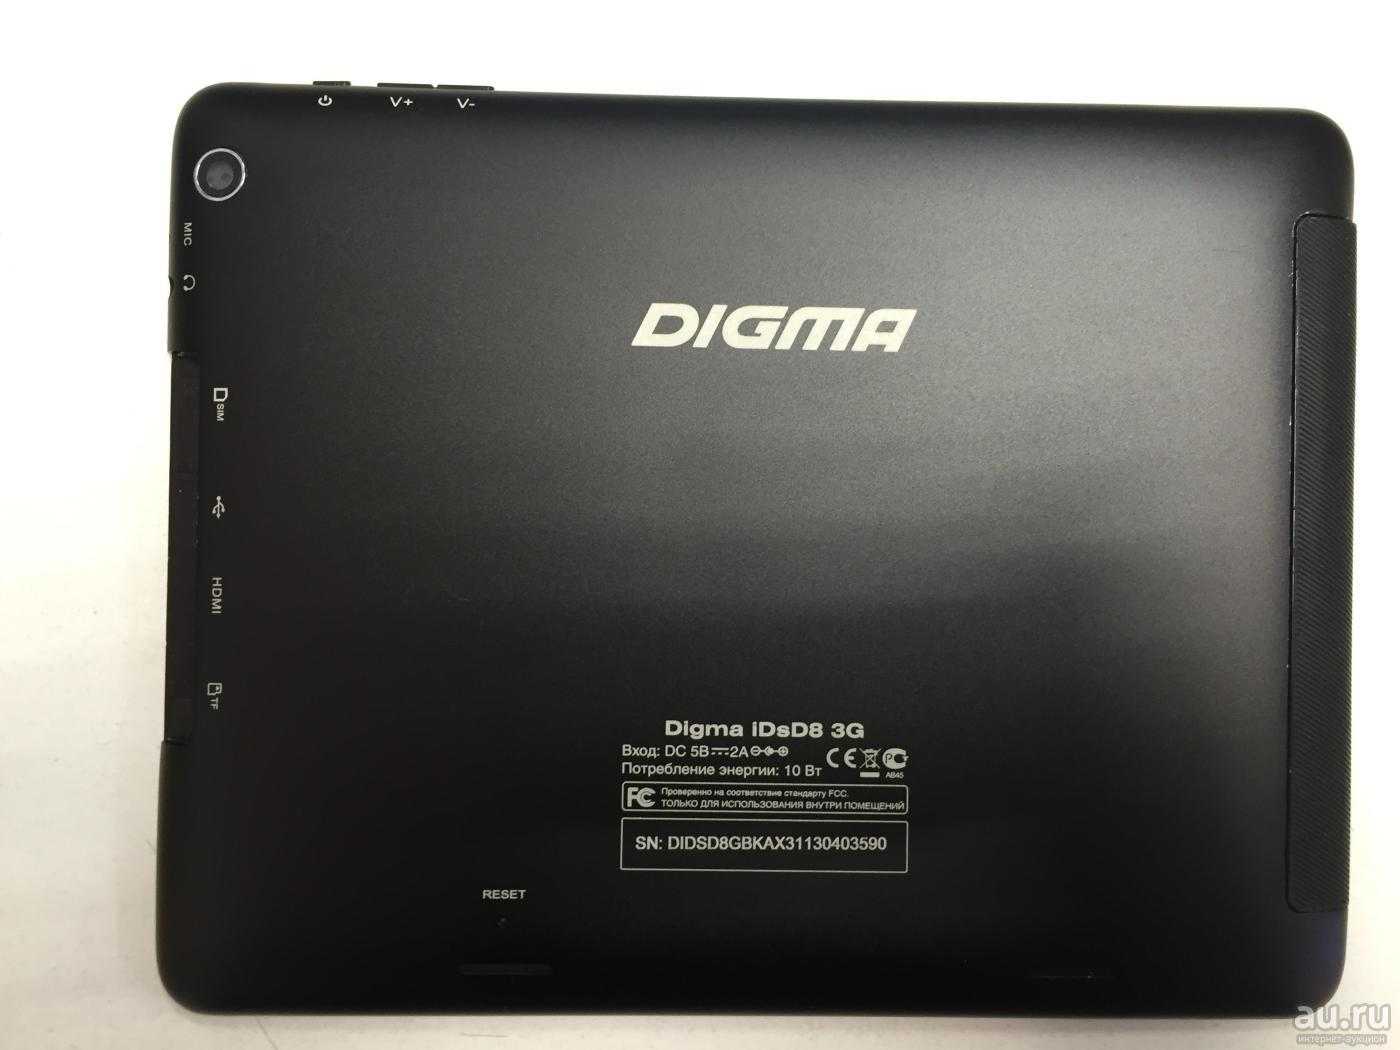 Digma idsd8 3g купить по акционной цене , отзывы и обзоры.